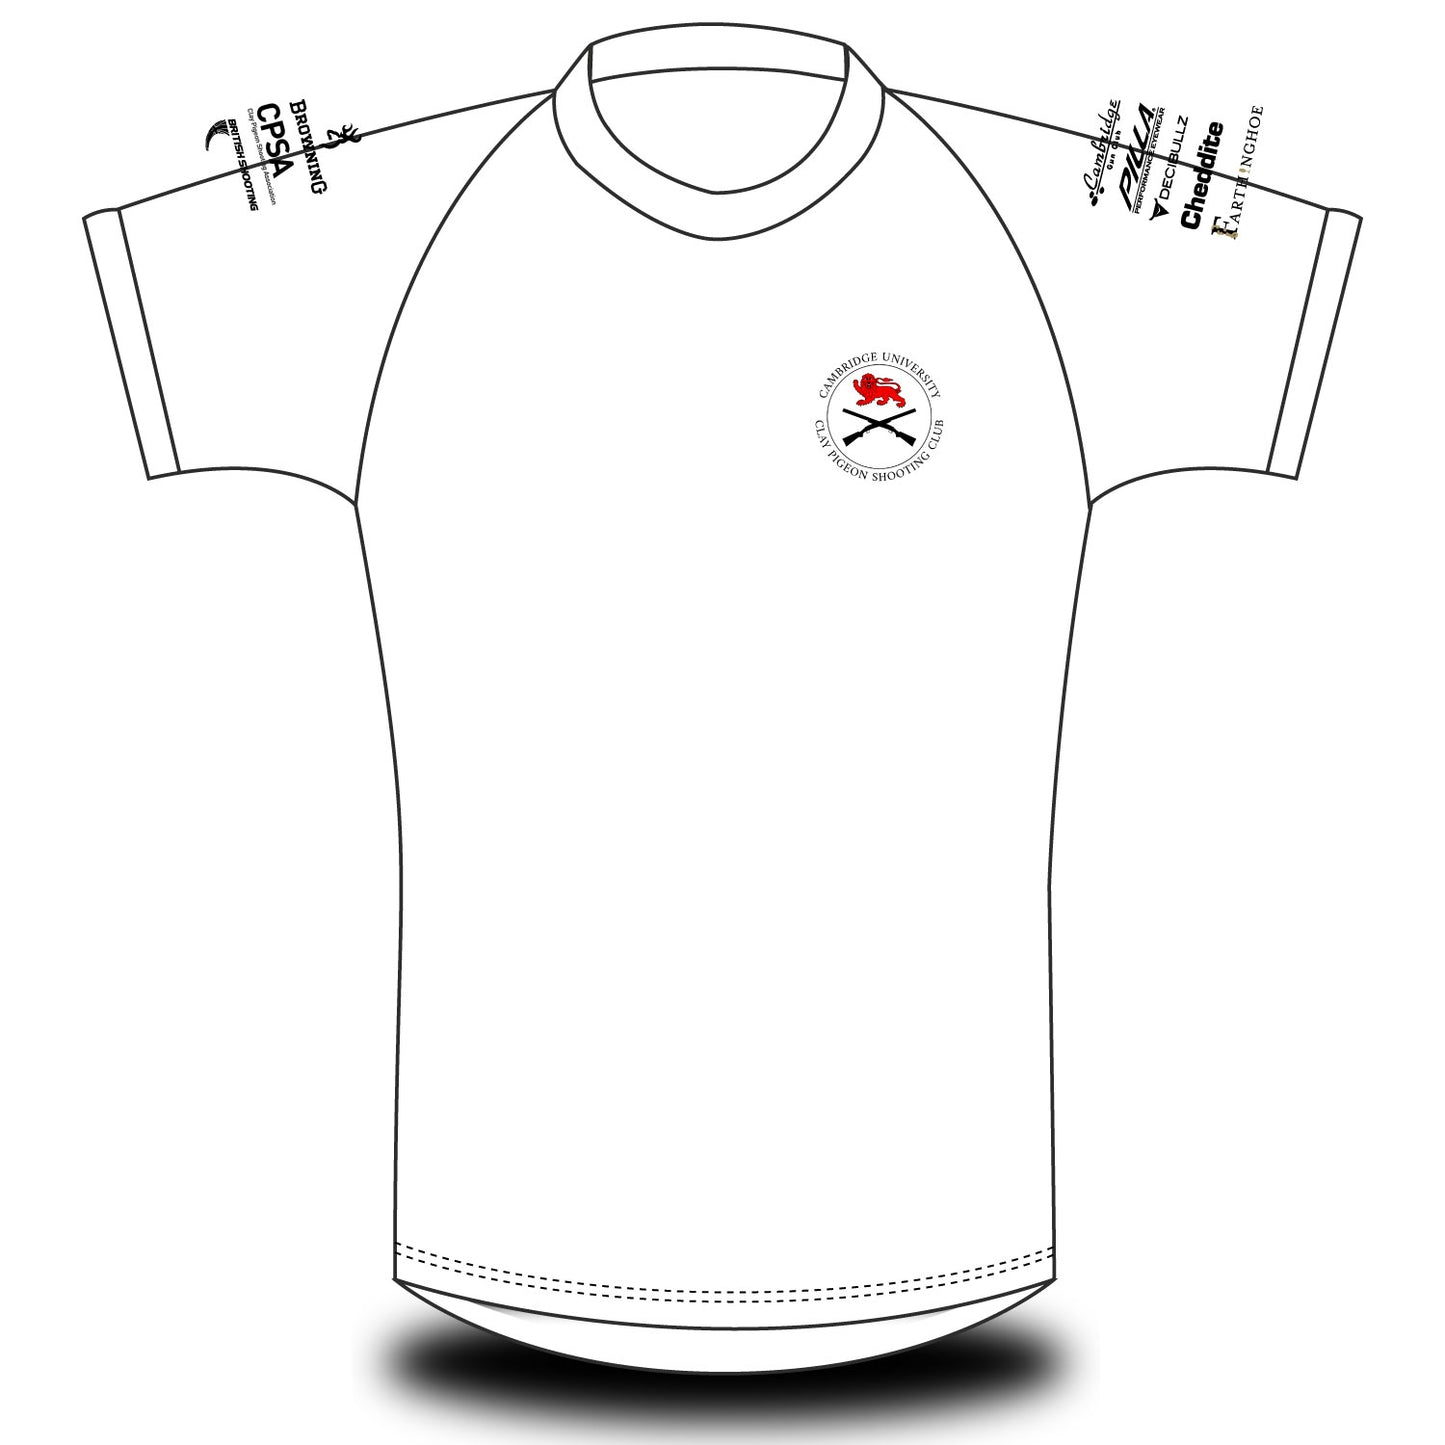 CUCPSC White T-shirt